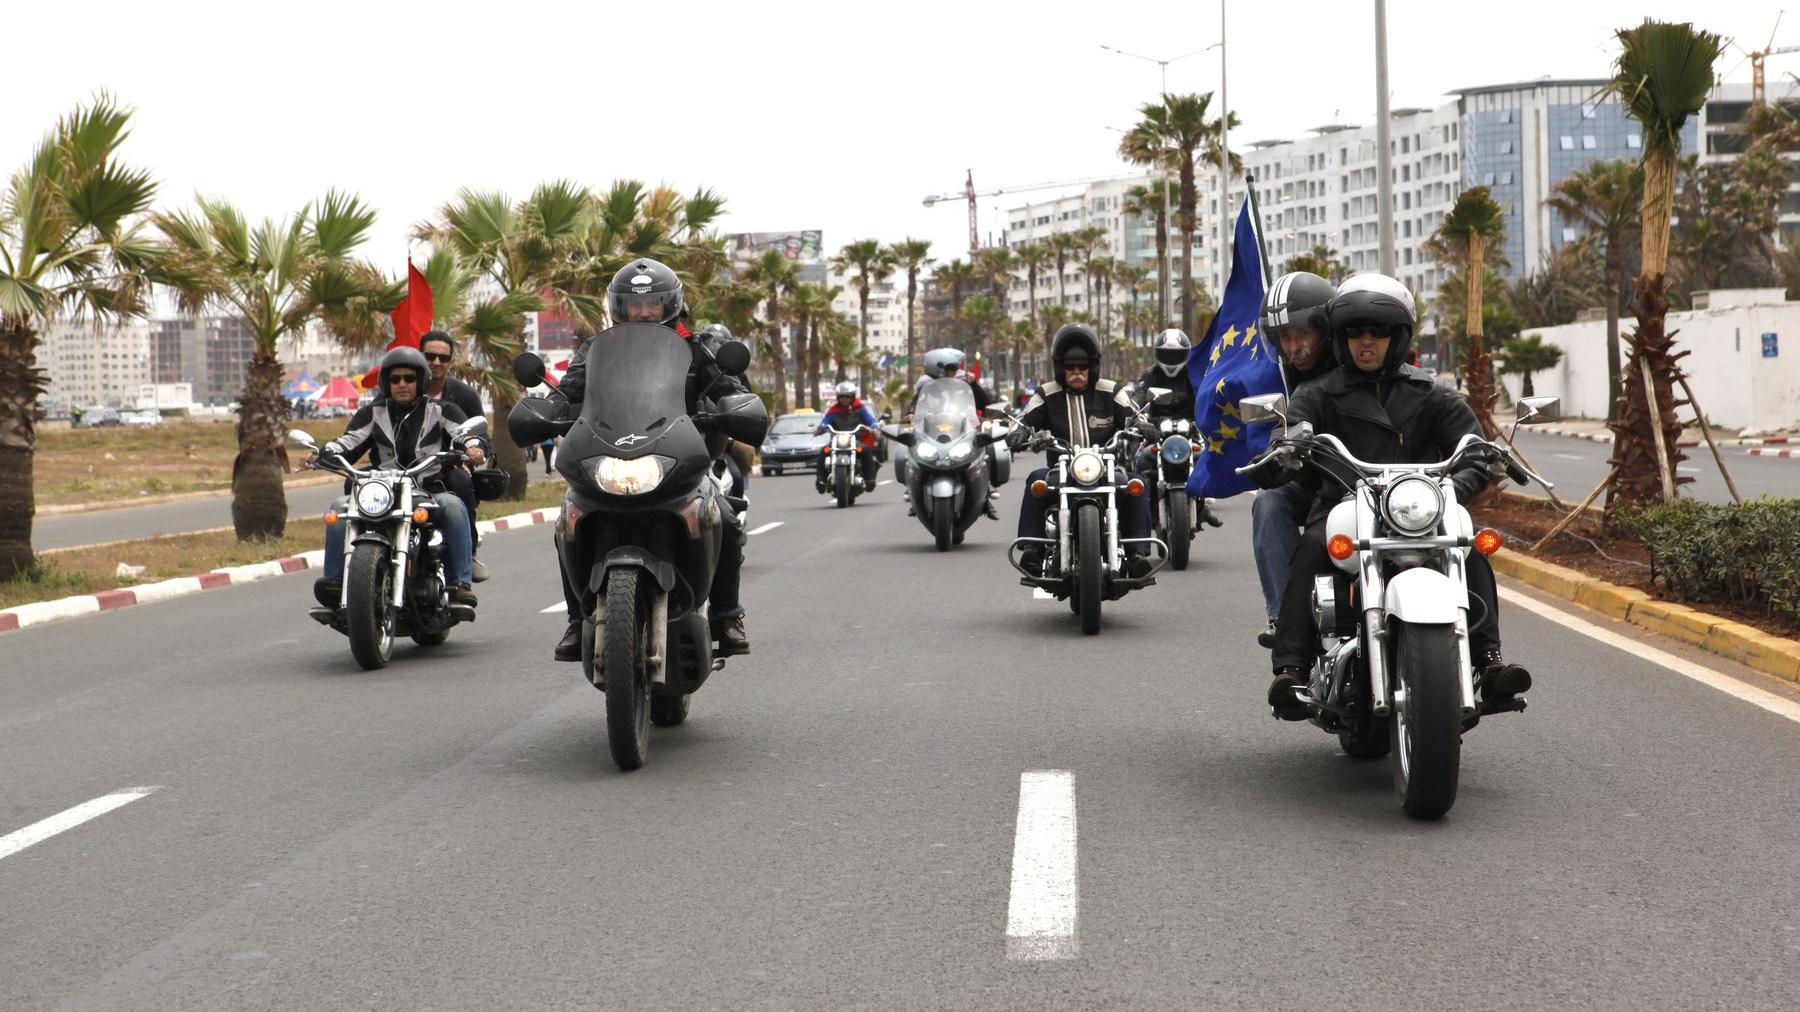 Pour sa première édition "Casa Motards" a accueilli des bikers des quatre coins du monde.
